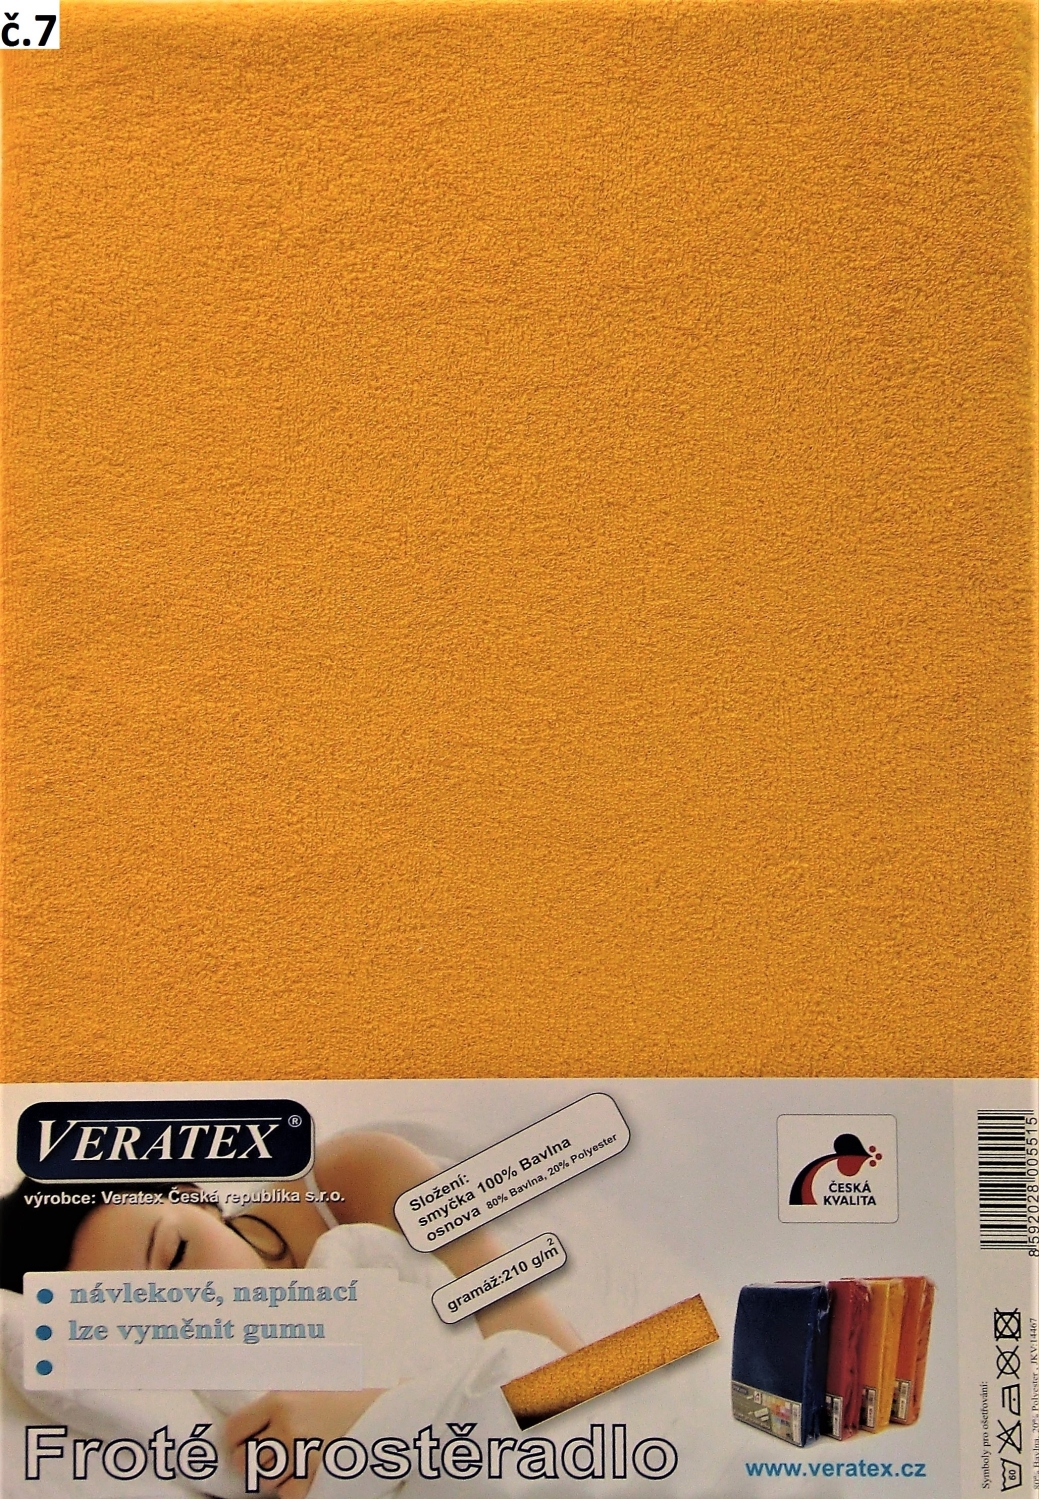 Veratex Froté prostěradlo dvoulůžko 180x200 cm (č. 7-sytě žlutá)